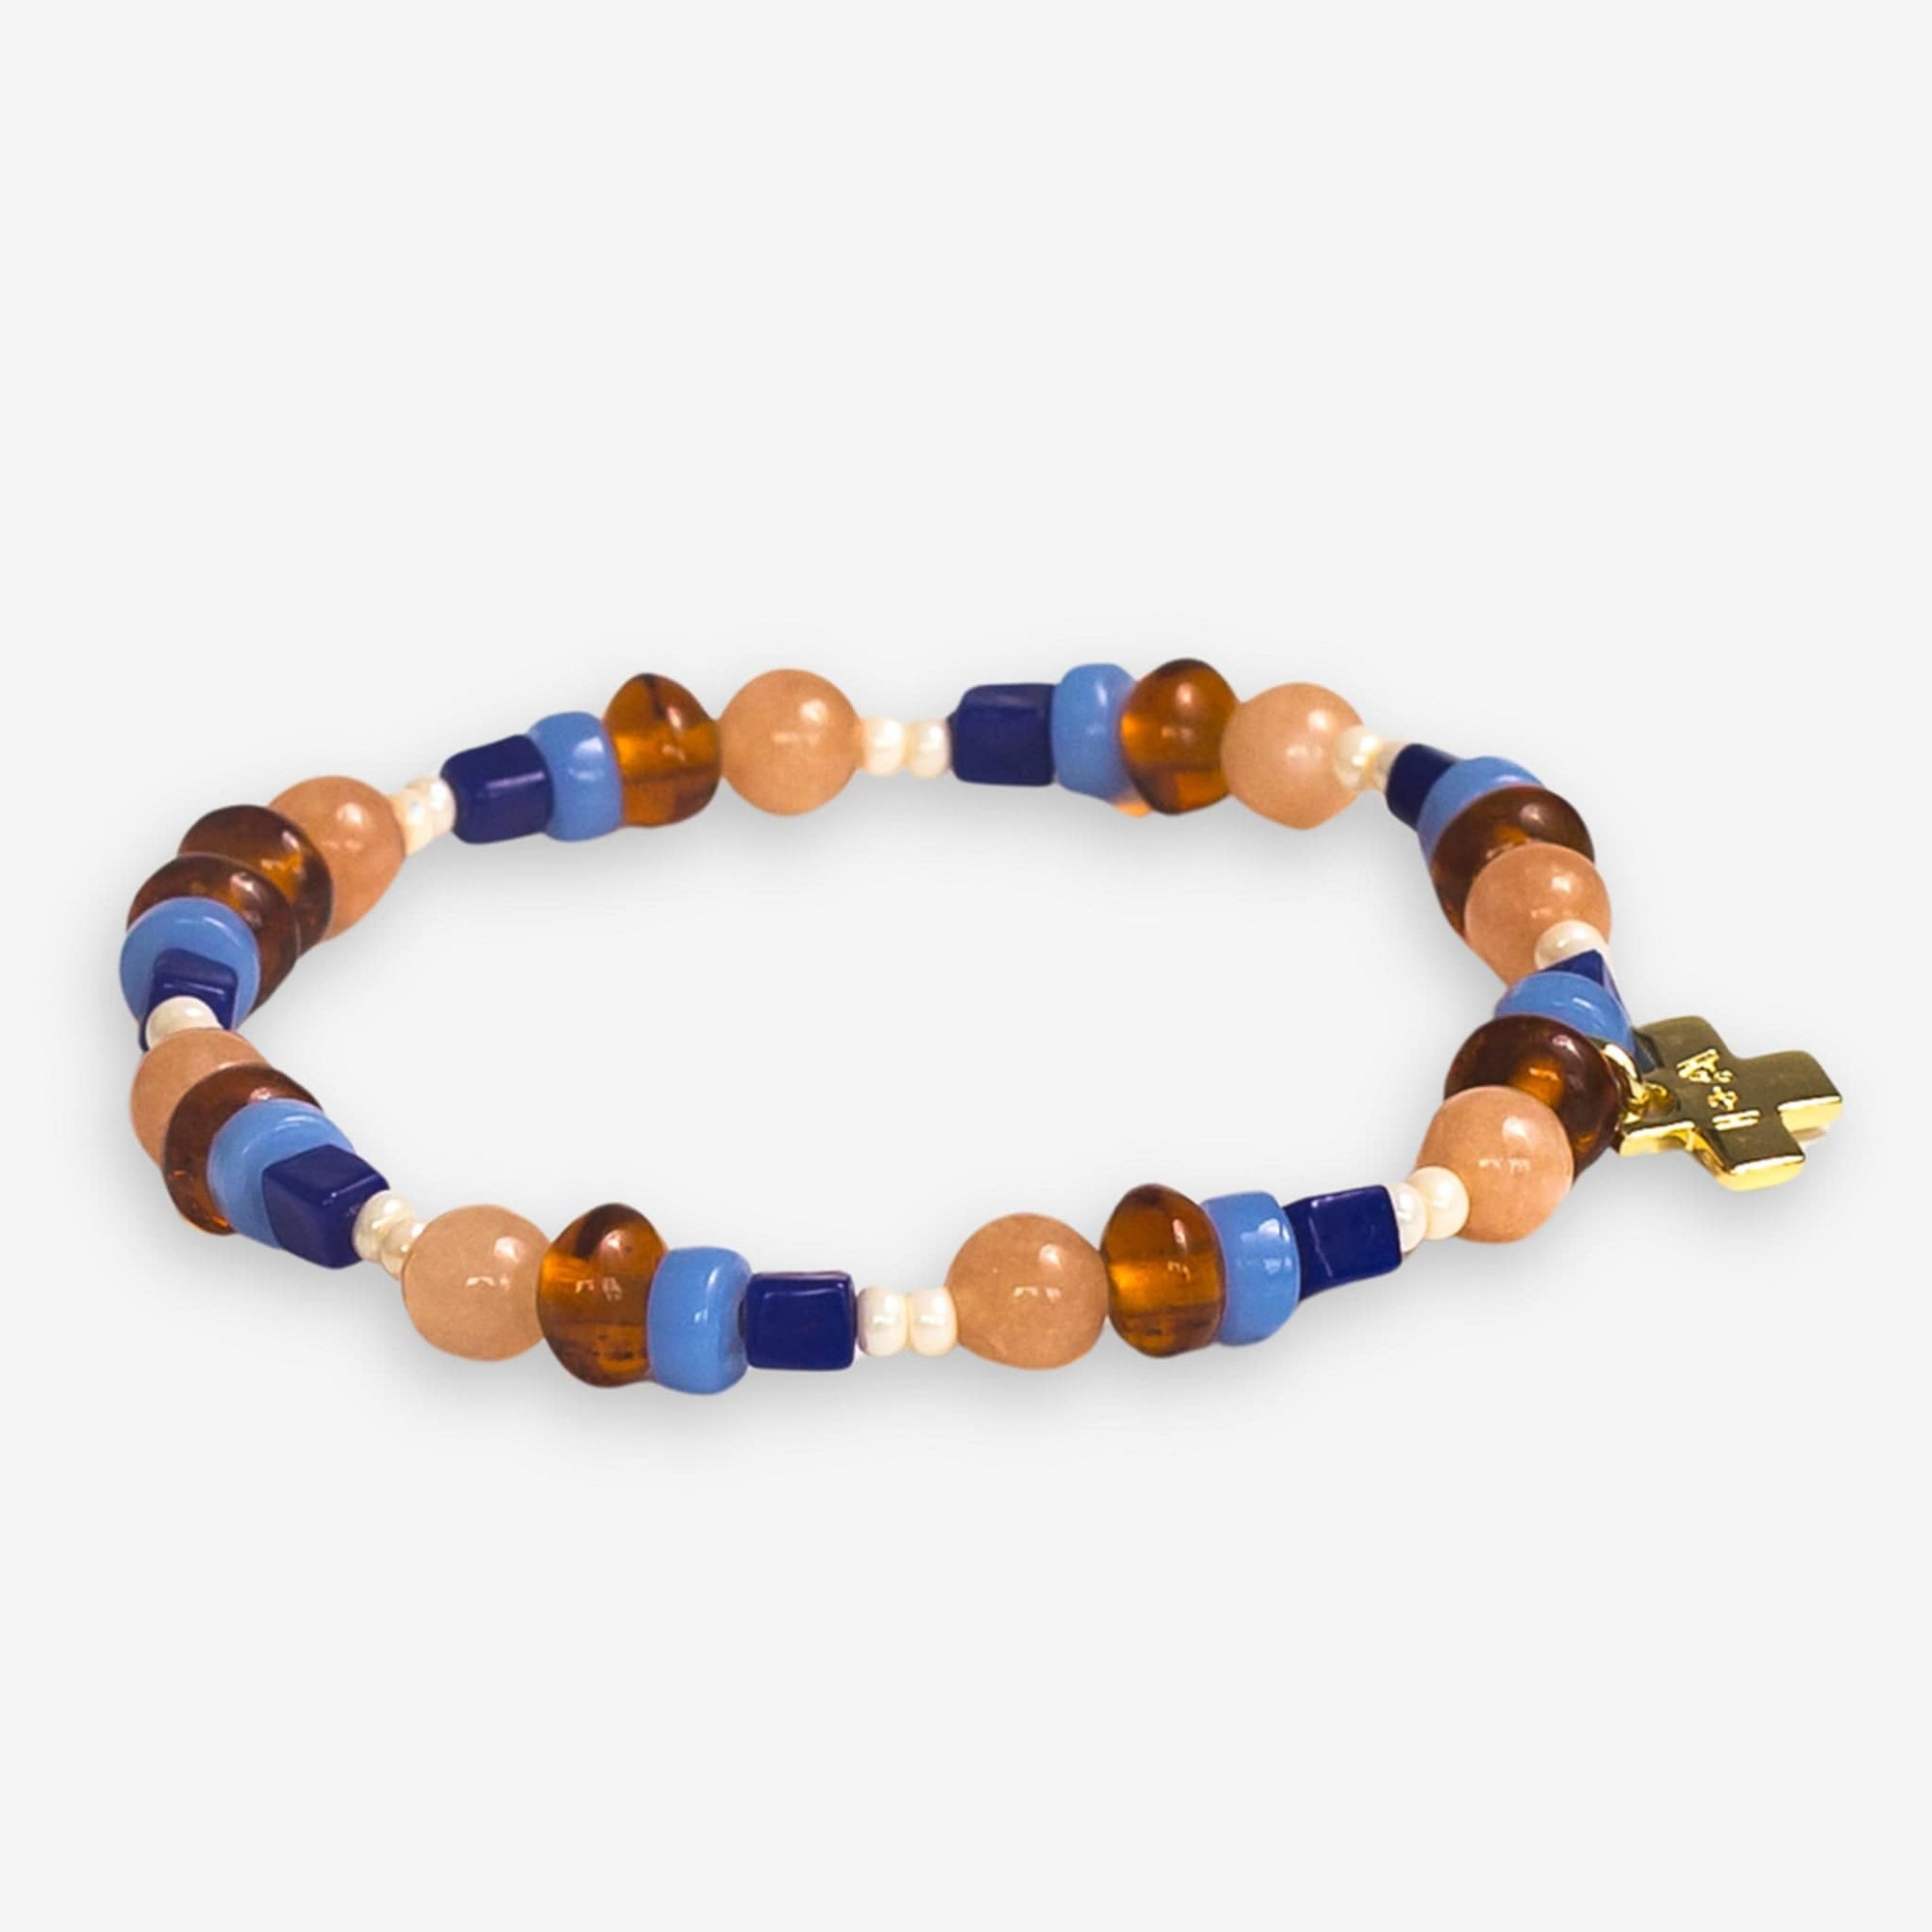 Sydney Mixed Beads And Stones Stretch Bracelet Sedona Wholesale